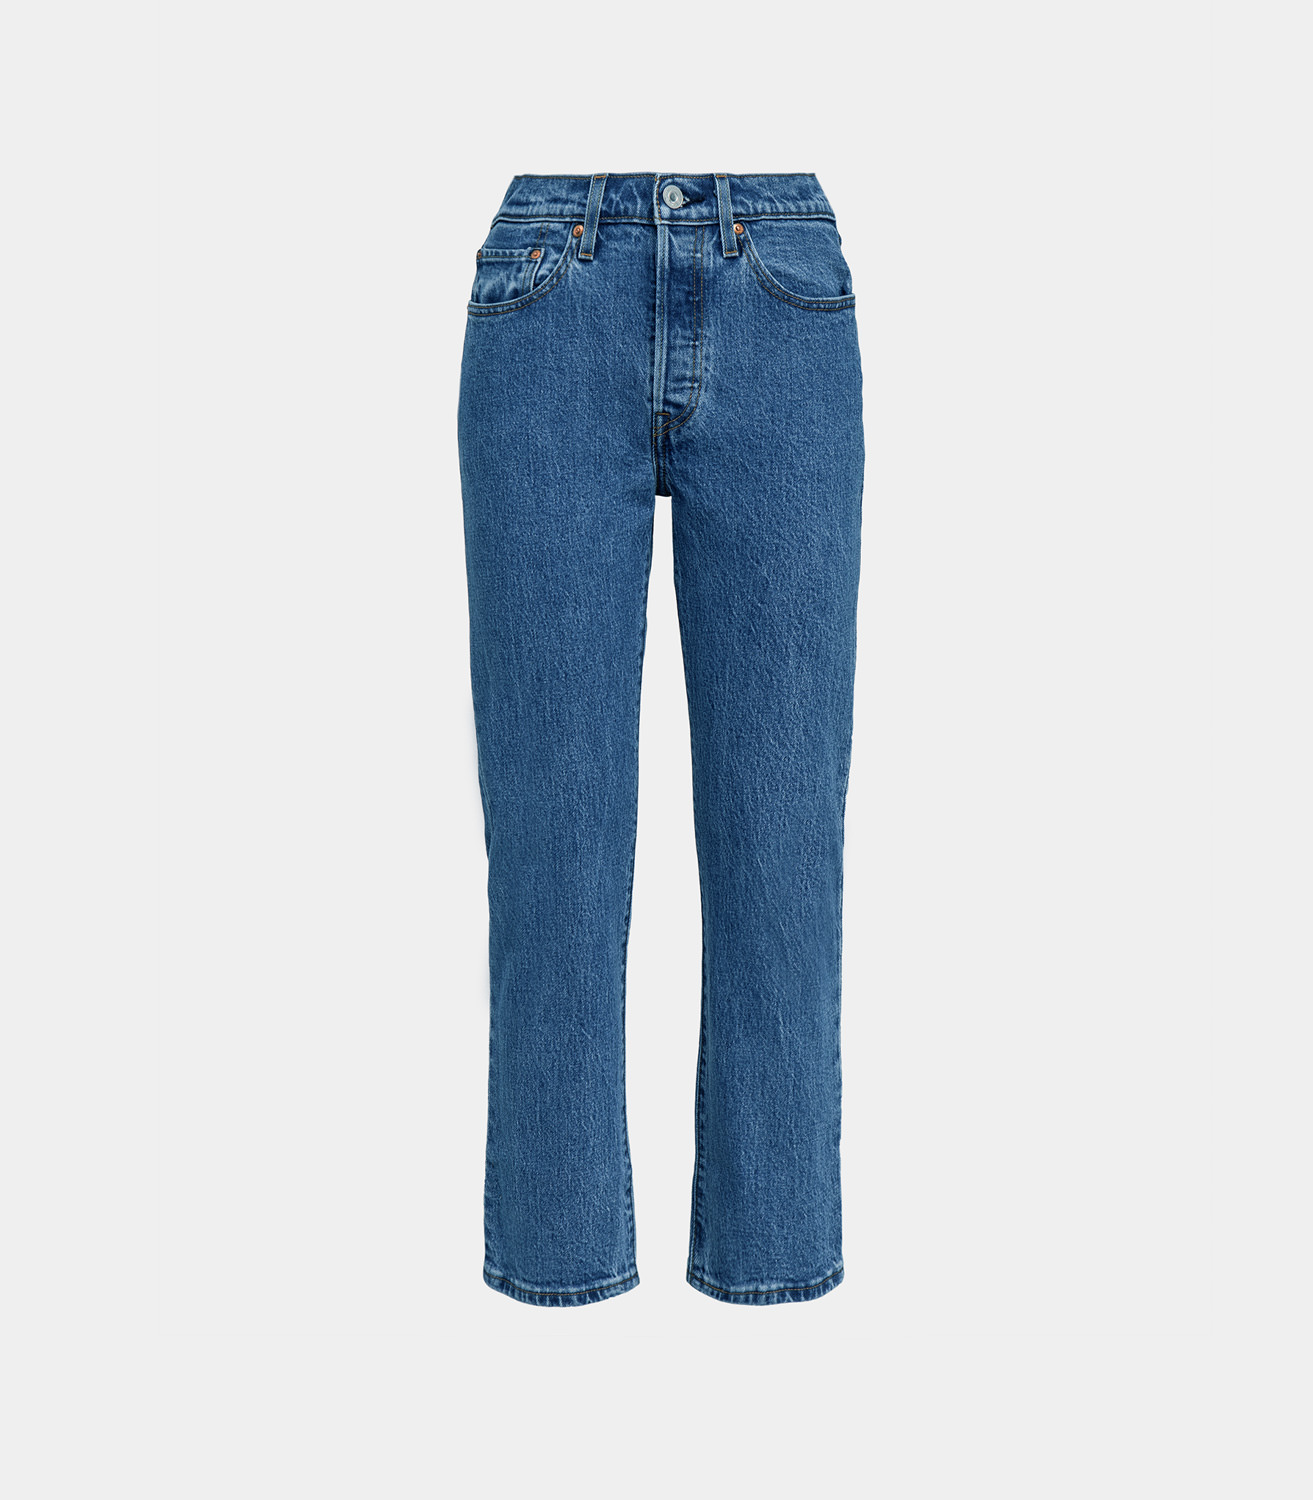 levis jeans 501 crop